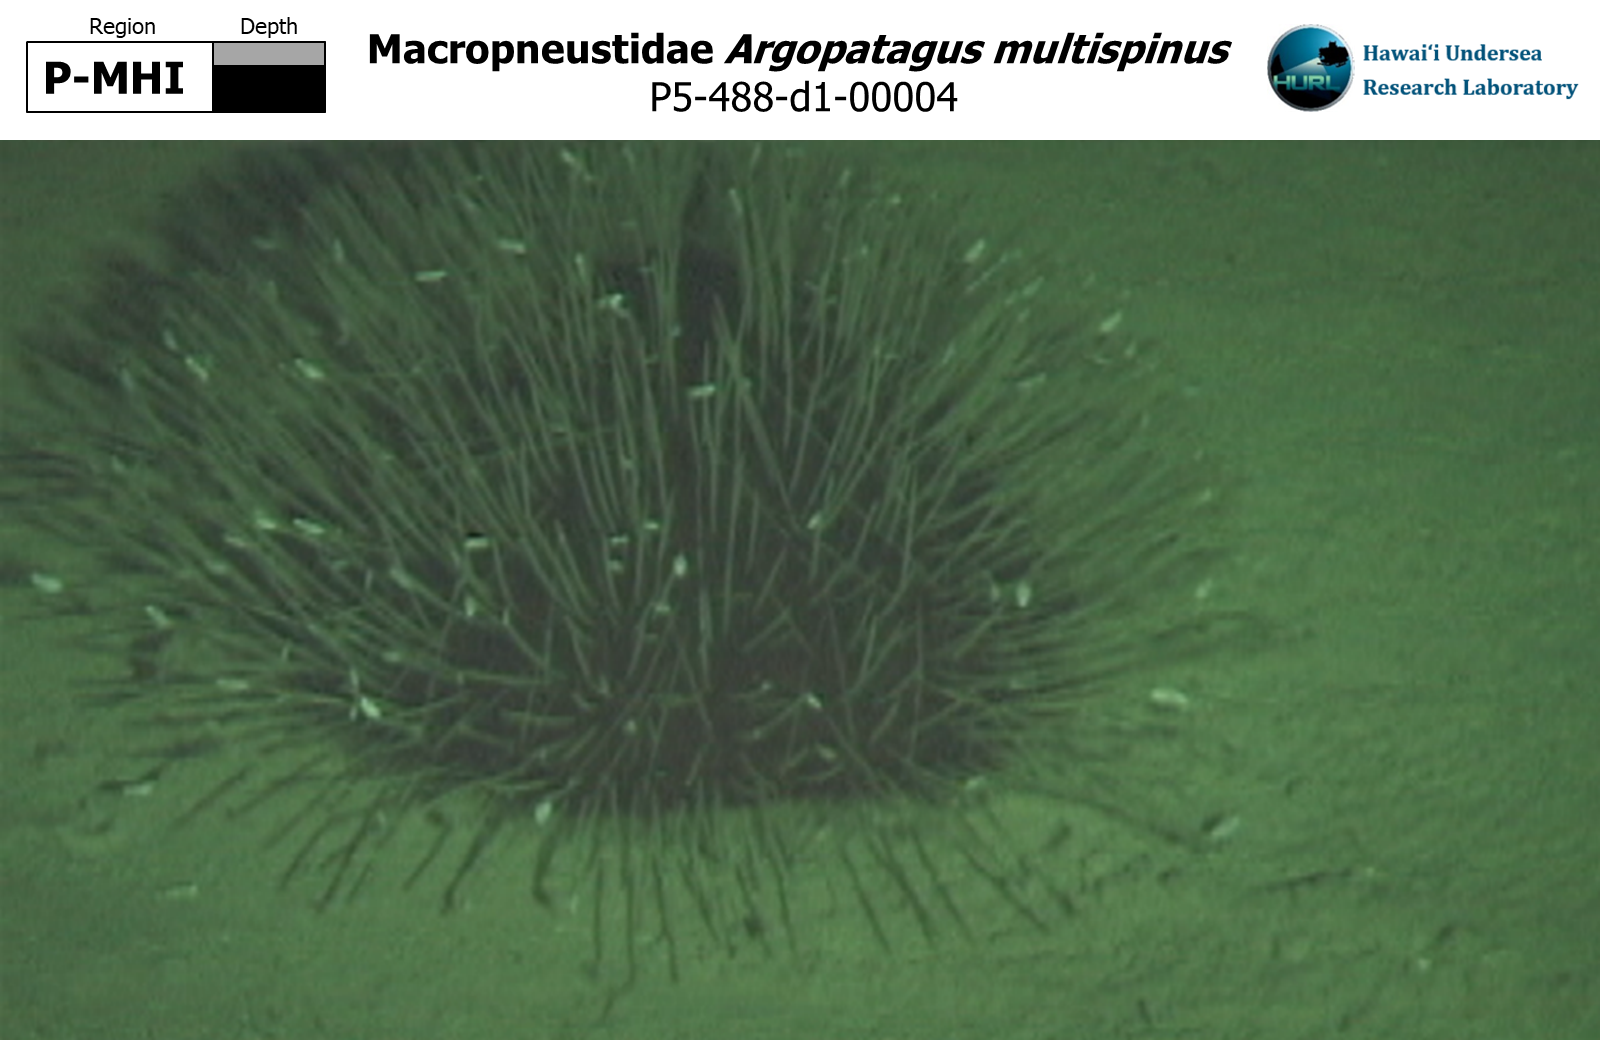 Argopatagus multispinus